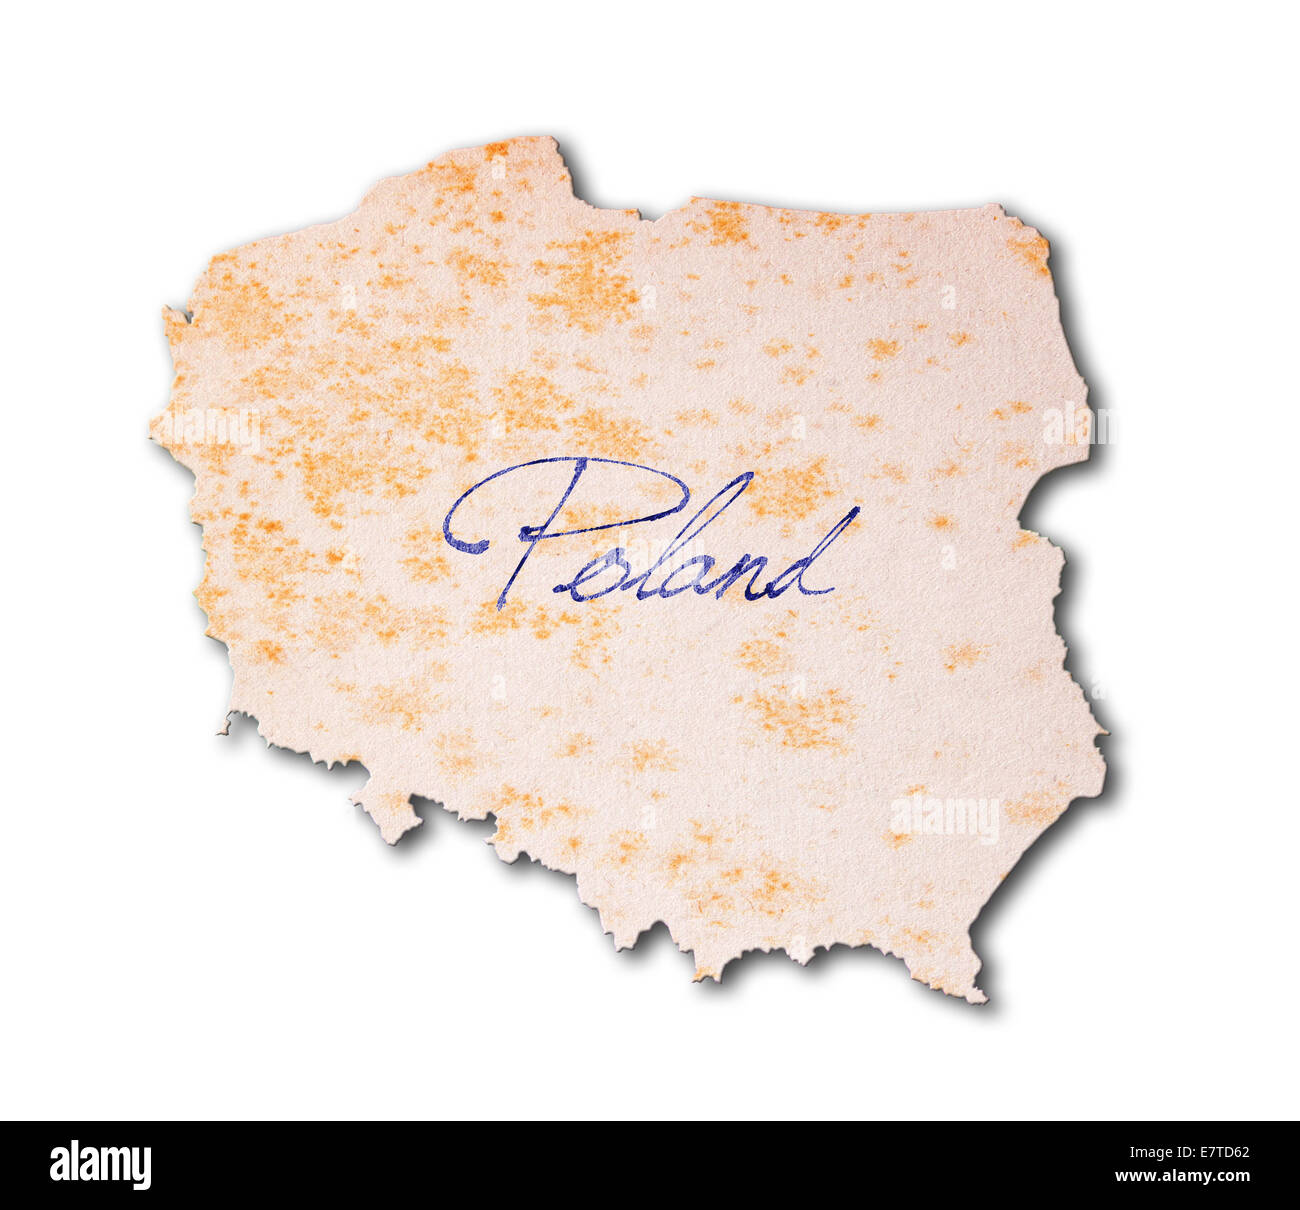 Polonia - papel viejo, escritura a mano con tinta azul Foto de stock